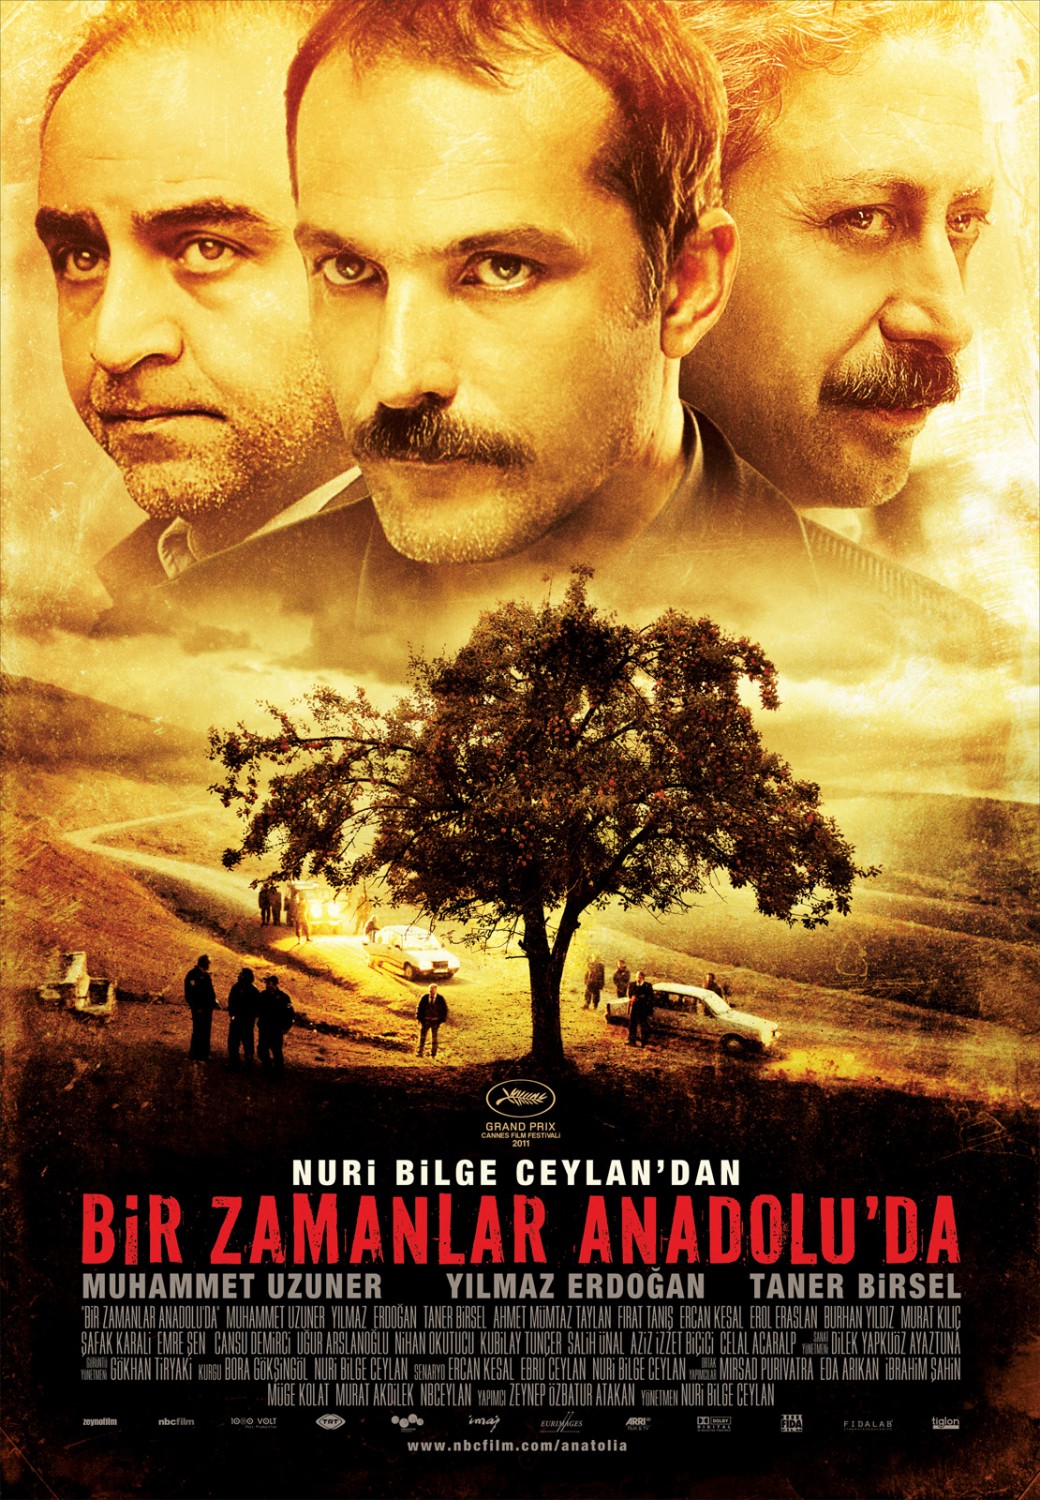 Bir zamanlar Anadolu da movie